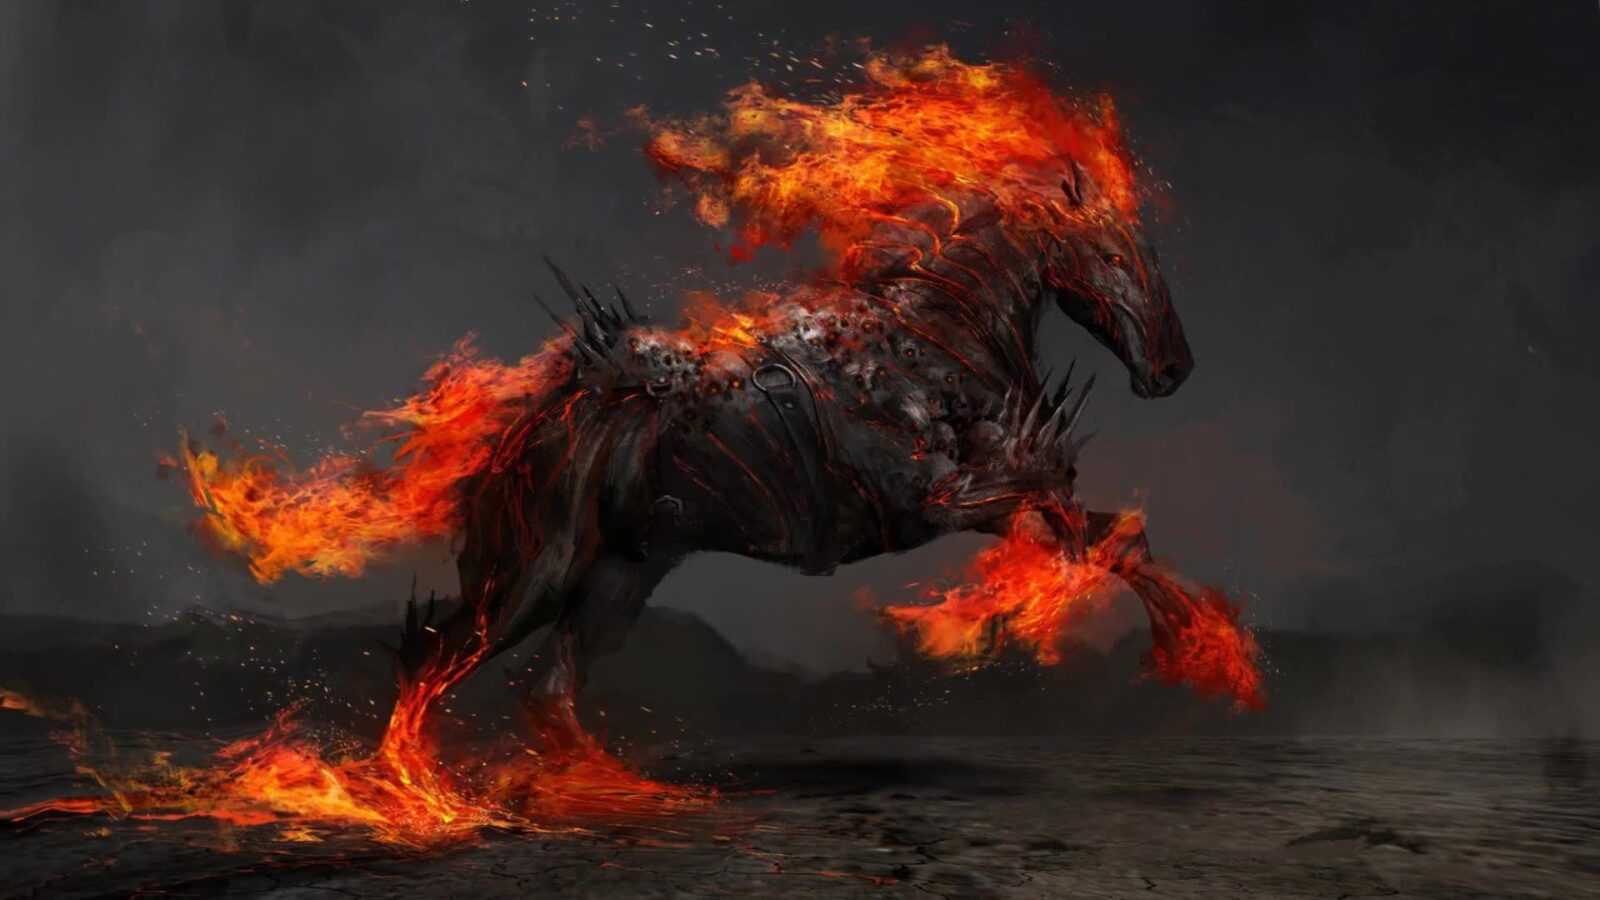 Running War Horse In Fire - Free Live Wallpaper - Live Desktop Wallpapers